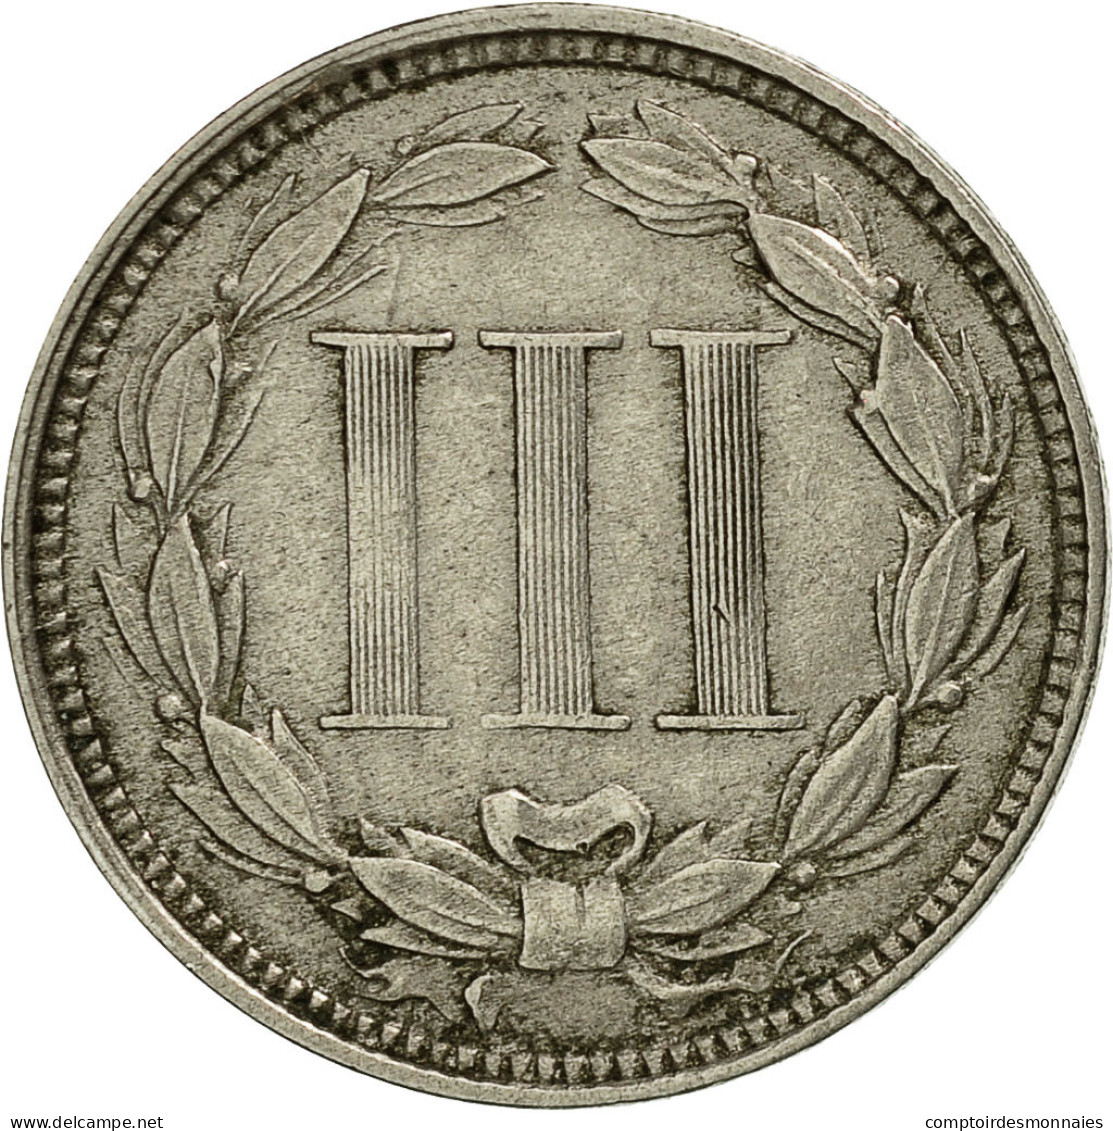 Monnaie, États-Unis, Nickel 3 Cents, 1866, U.S. Mint, Philadelphie, TTB+ - 2, 3 & 20 Cents